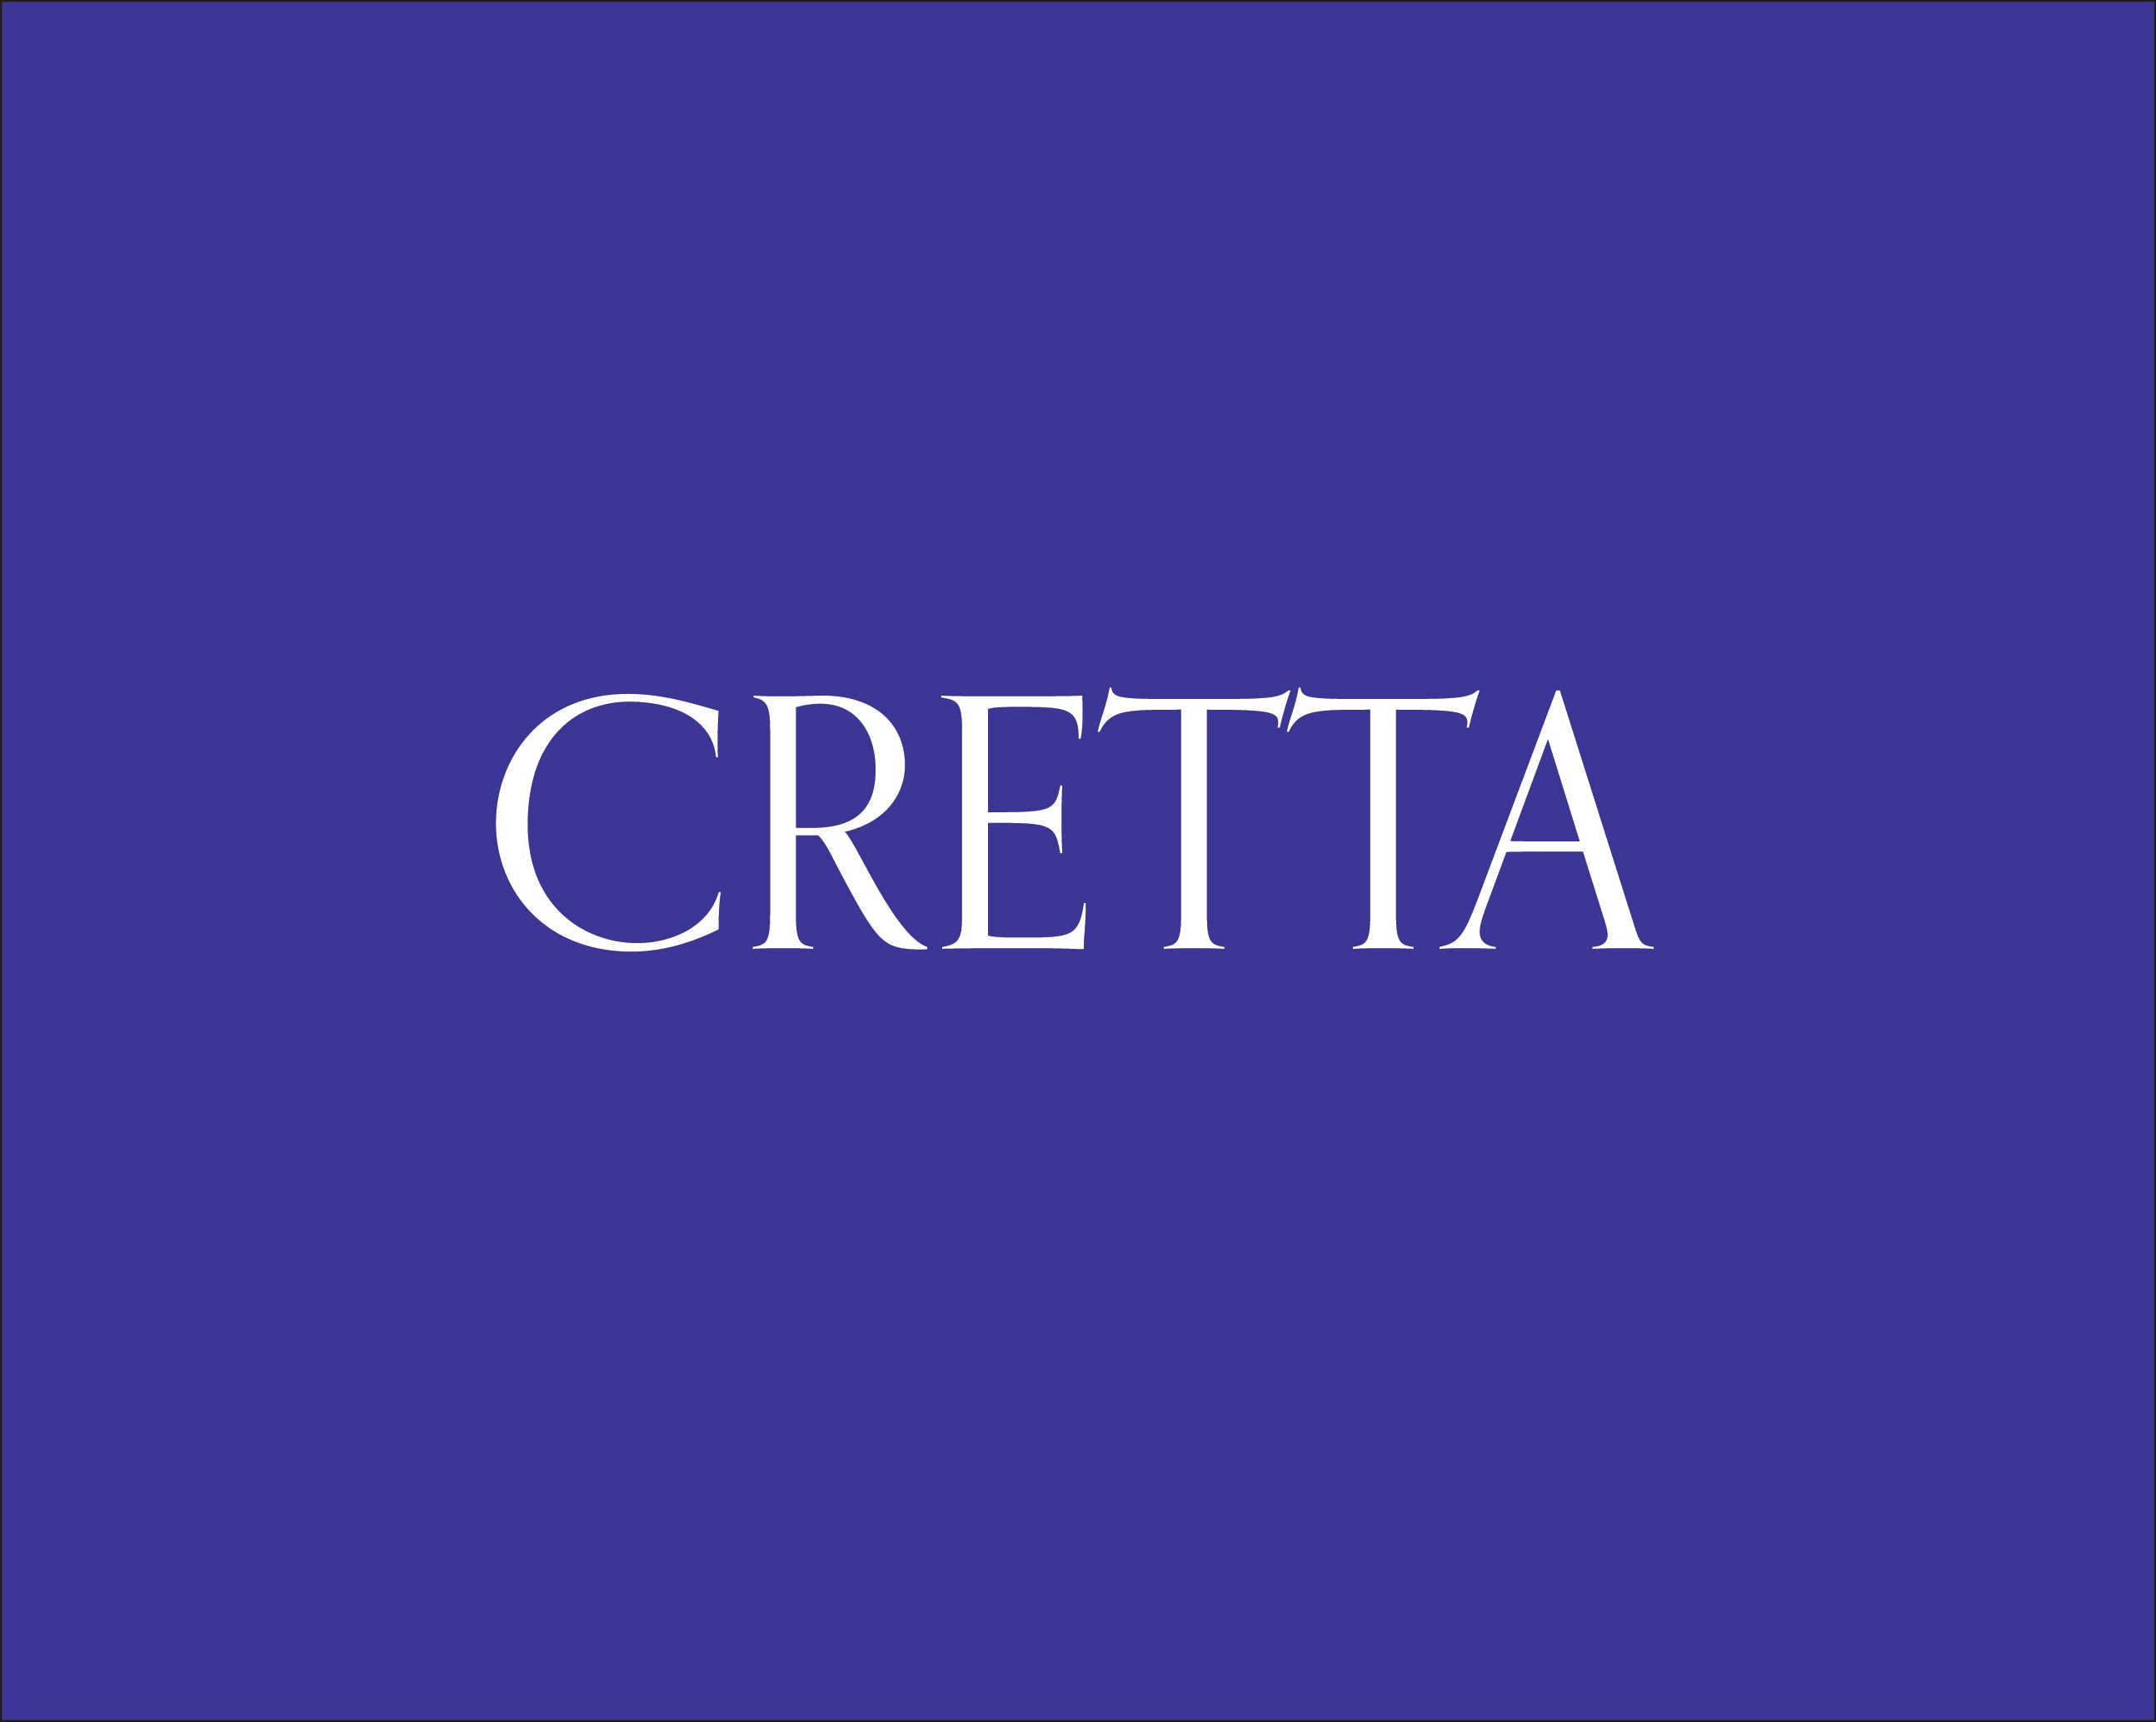 Cretta Official